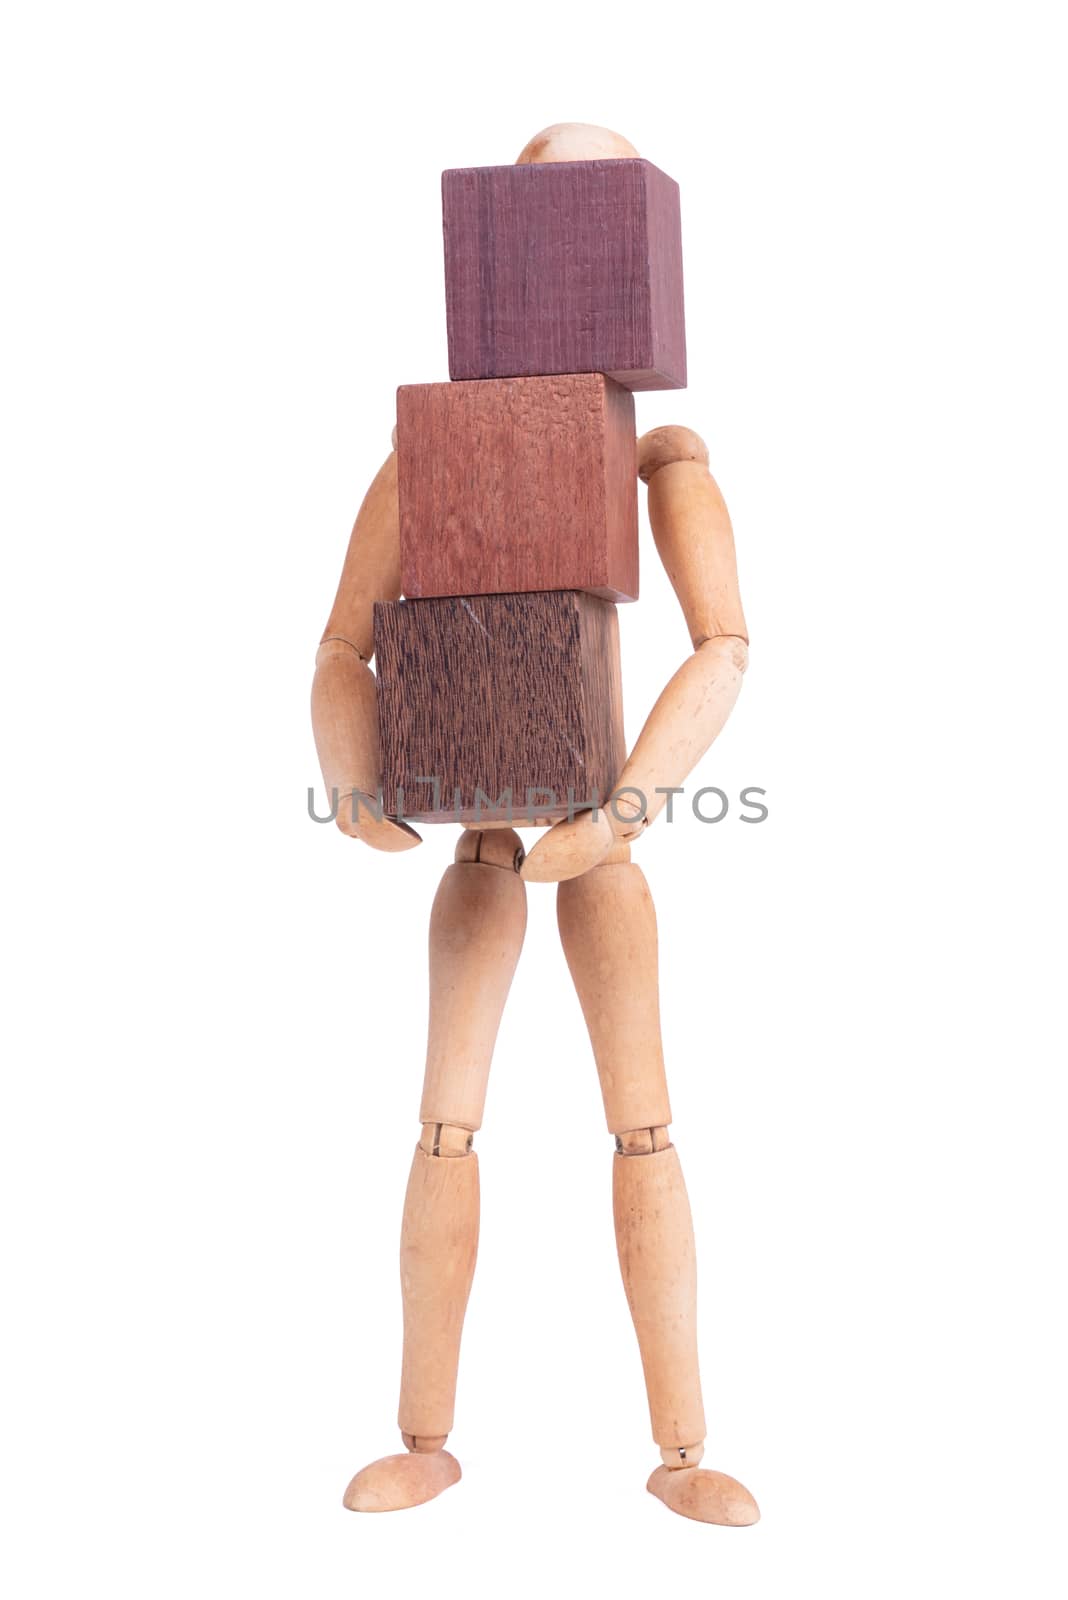 Wooden mannequin carrying wooden hardwood blocks by michaklootwijk